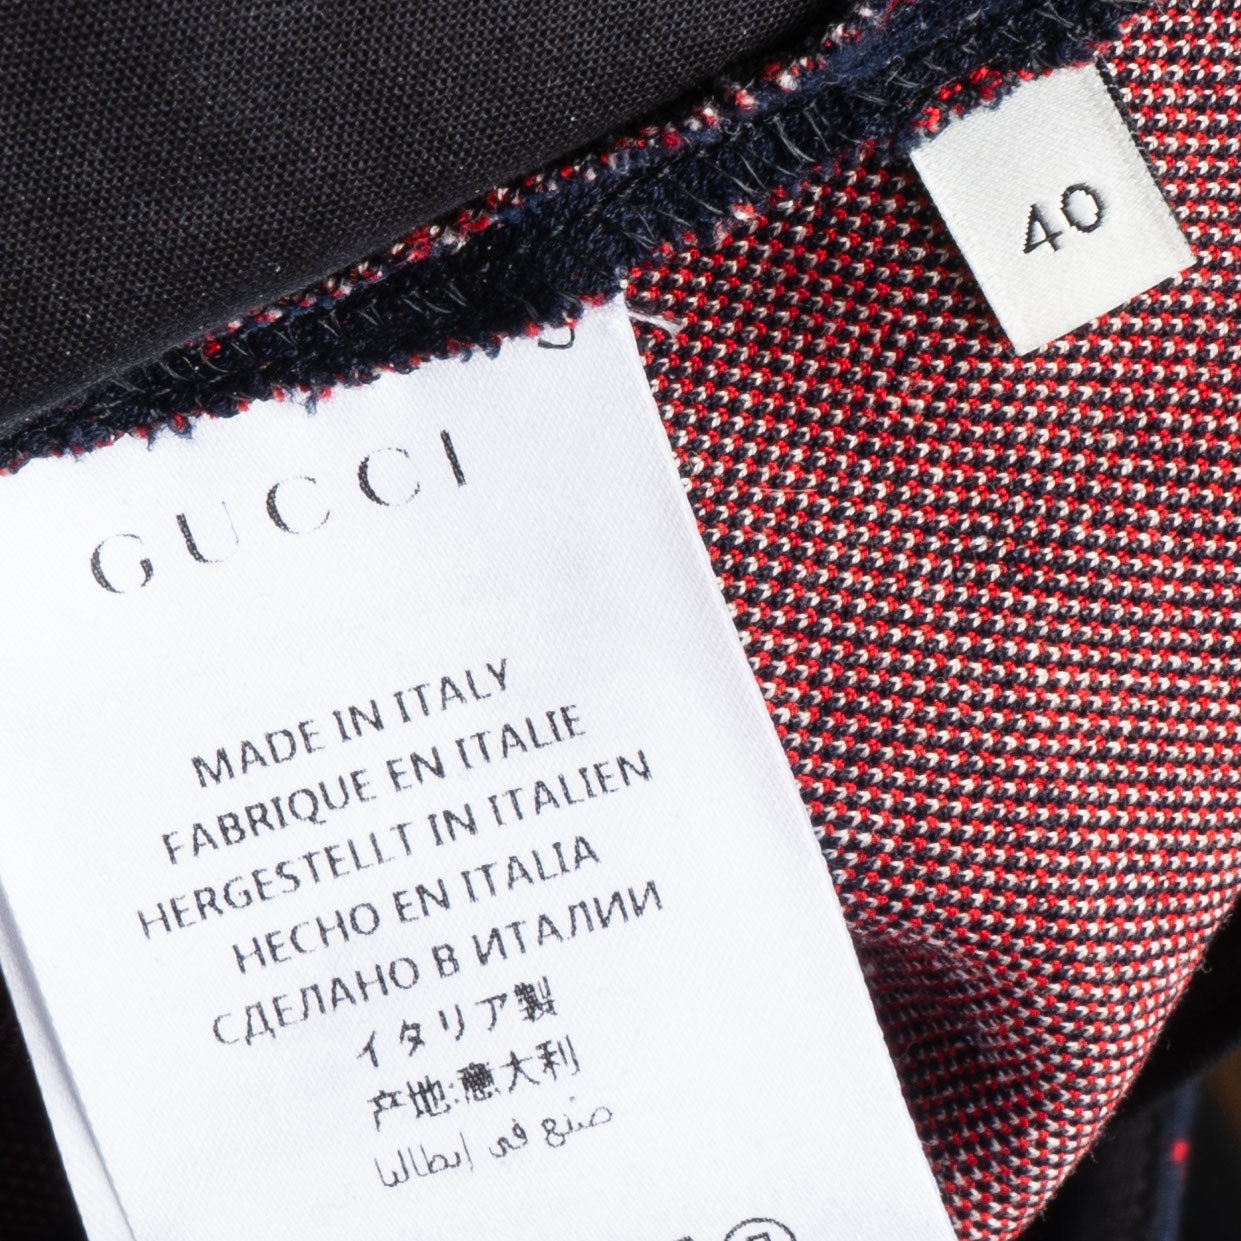 Gucci Heart Blazer + Pants Set (40)